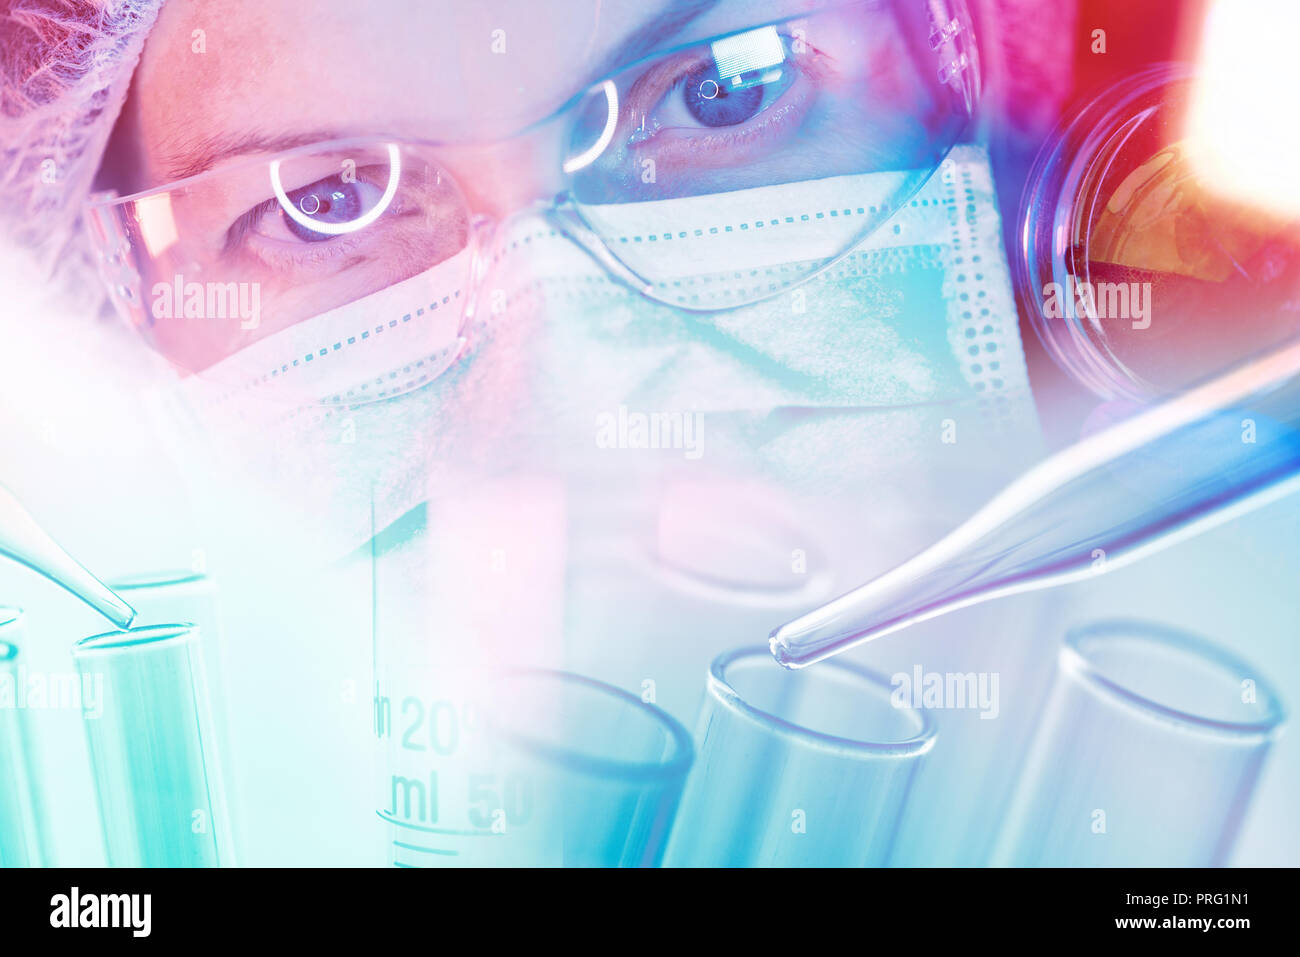 Científico médico trabajando con el material de vidrio de laboratorio, Imagen conceptual de equipamiento científico para la investigación en medicina y química Foto de stock